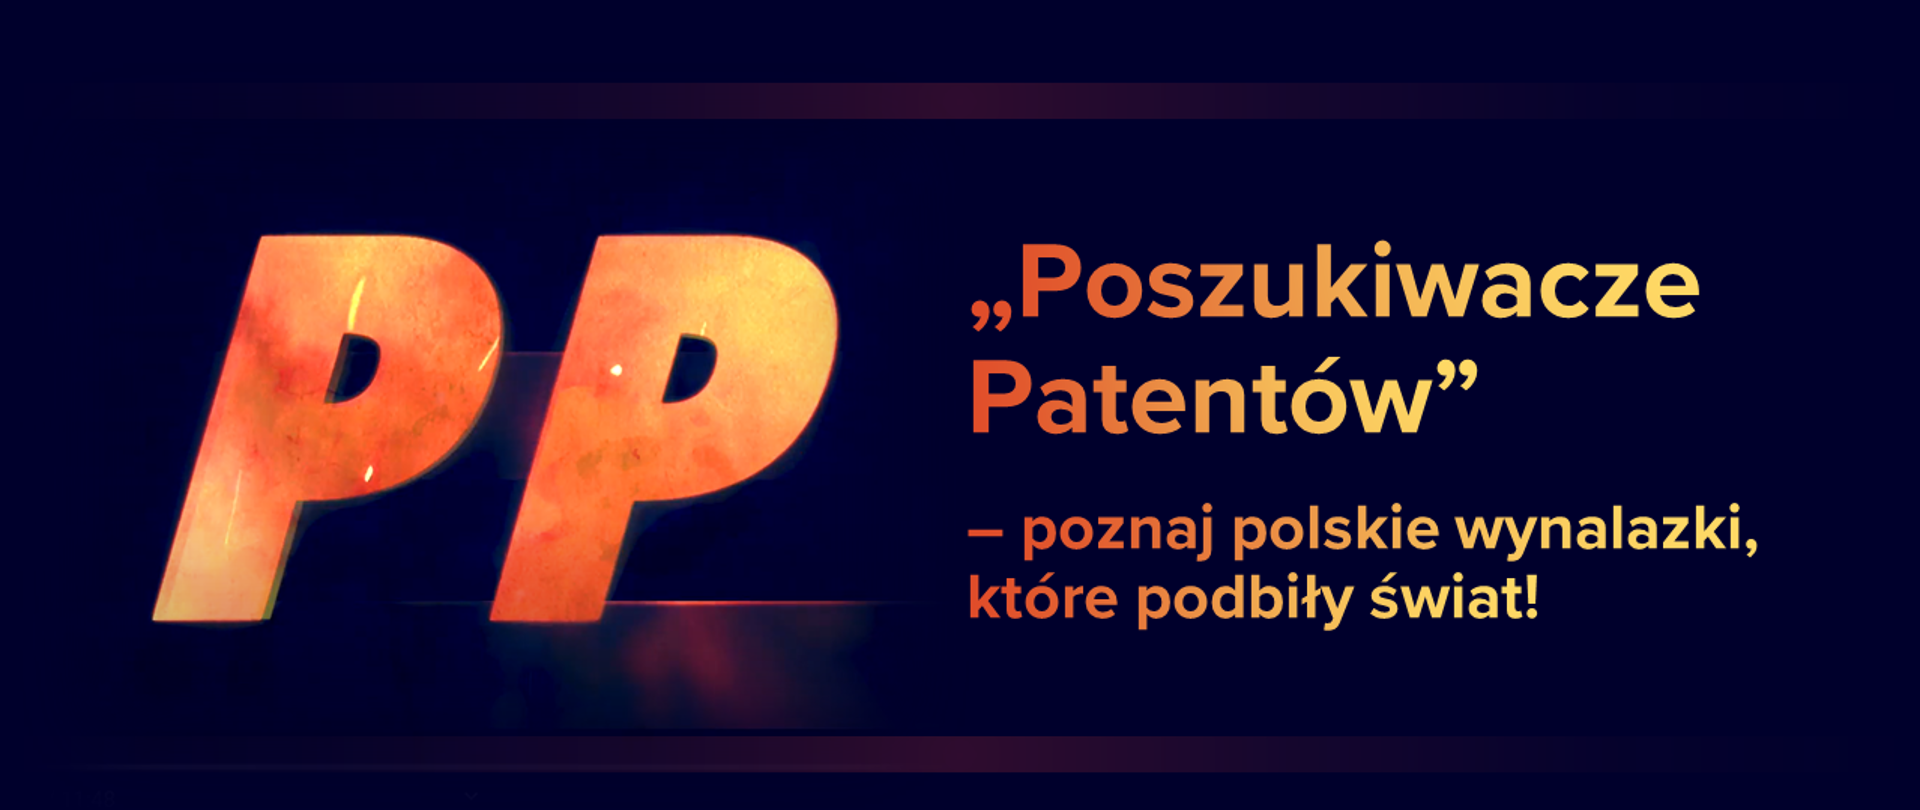 Po lewej stronie dwie duże litery P. Po prawej stronie napis Poszukiwacze Patentów - poznaj polskie wynalazki, które podbiły świat! Napis na ciemnym tle, wygląda jakby był wykuwany w ogniu. 